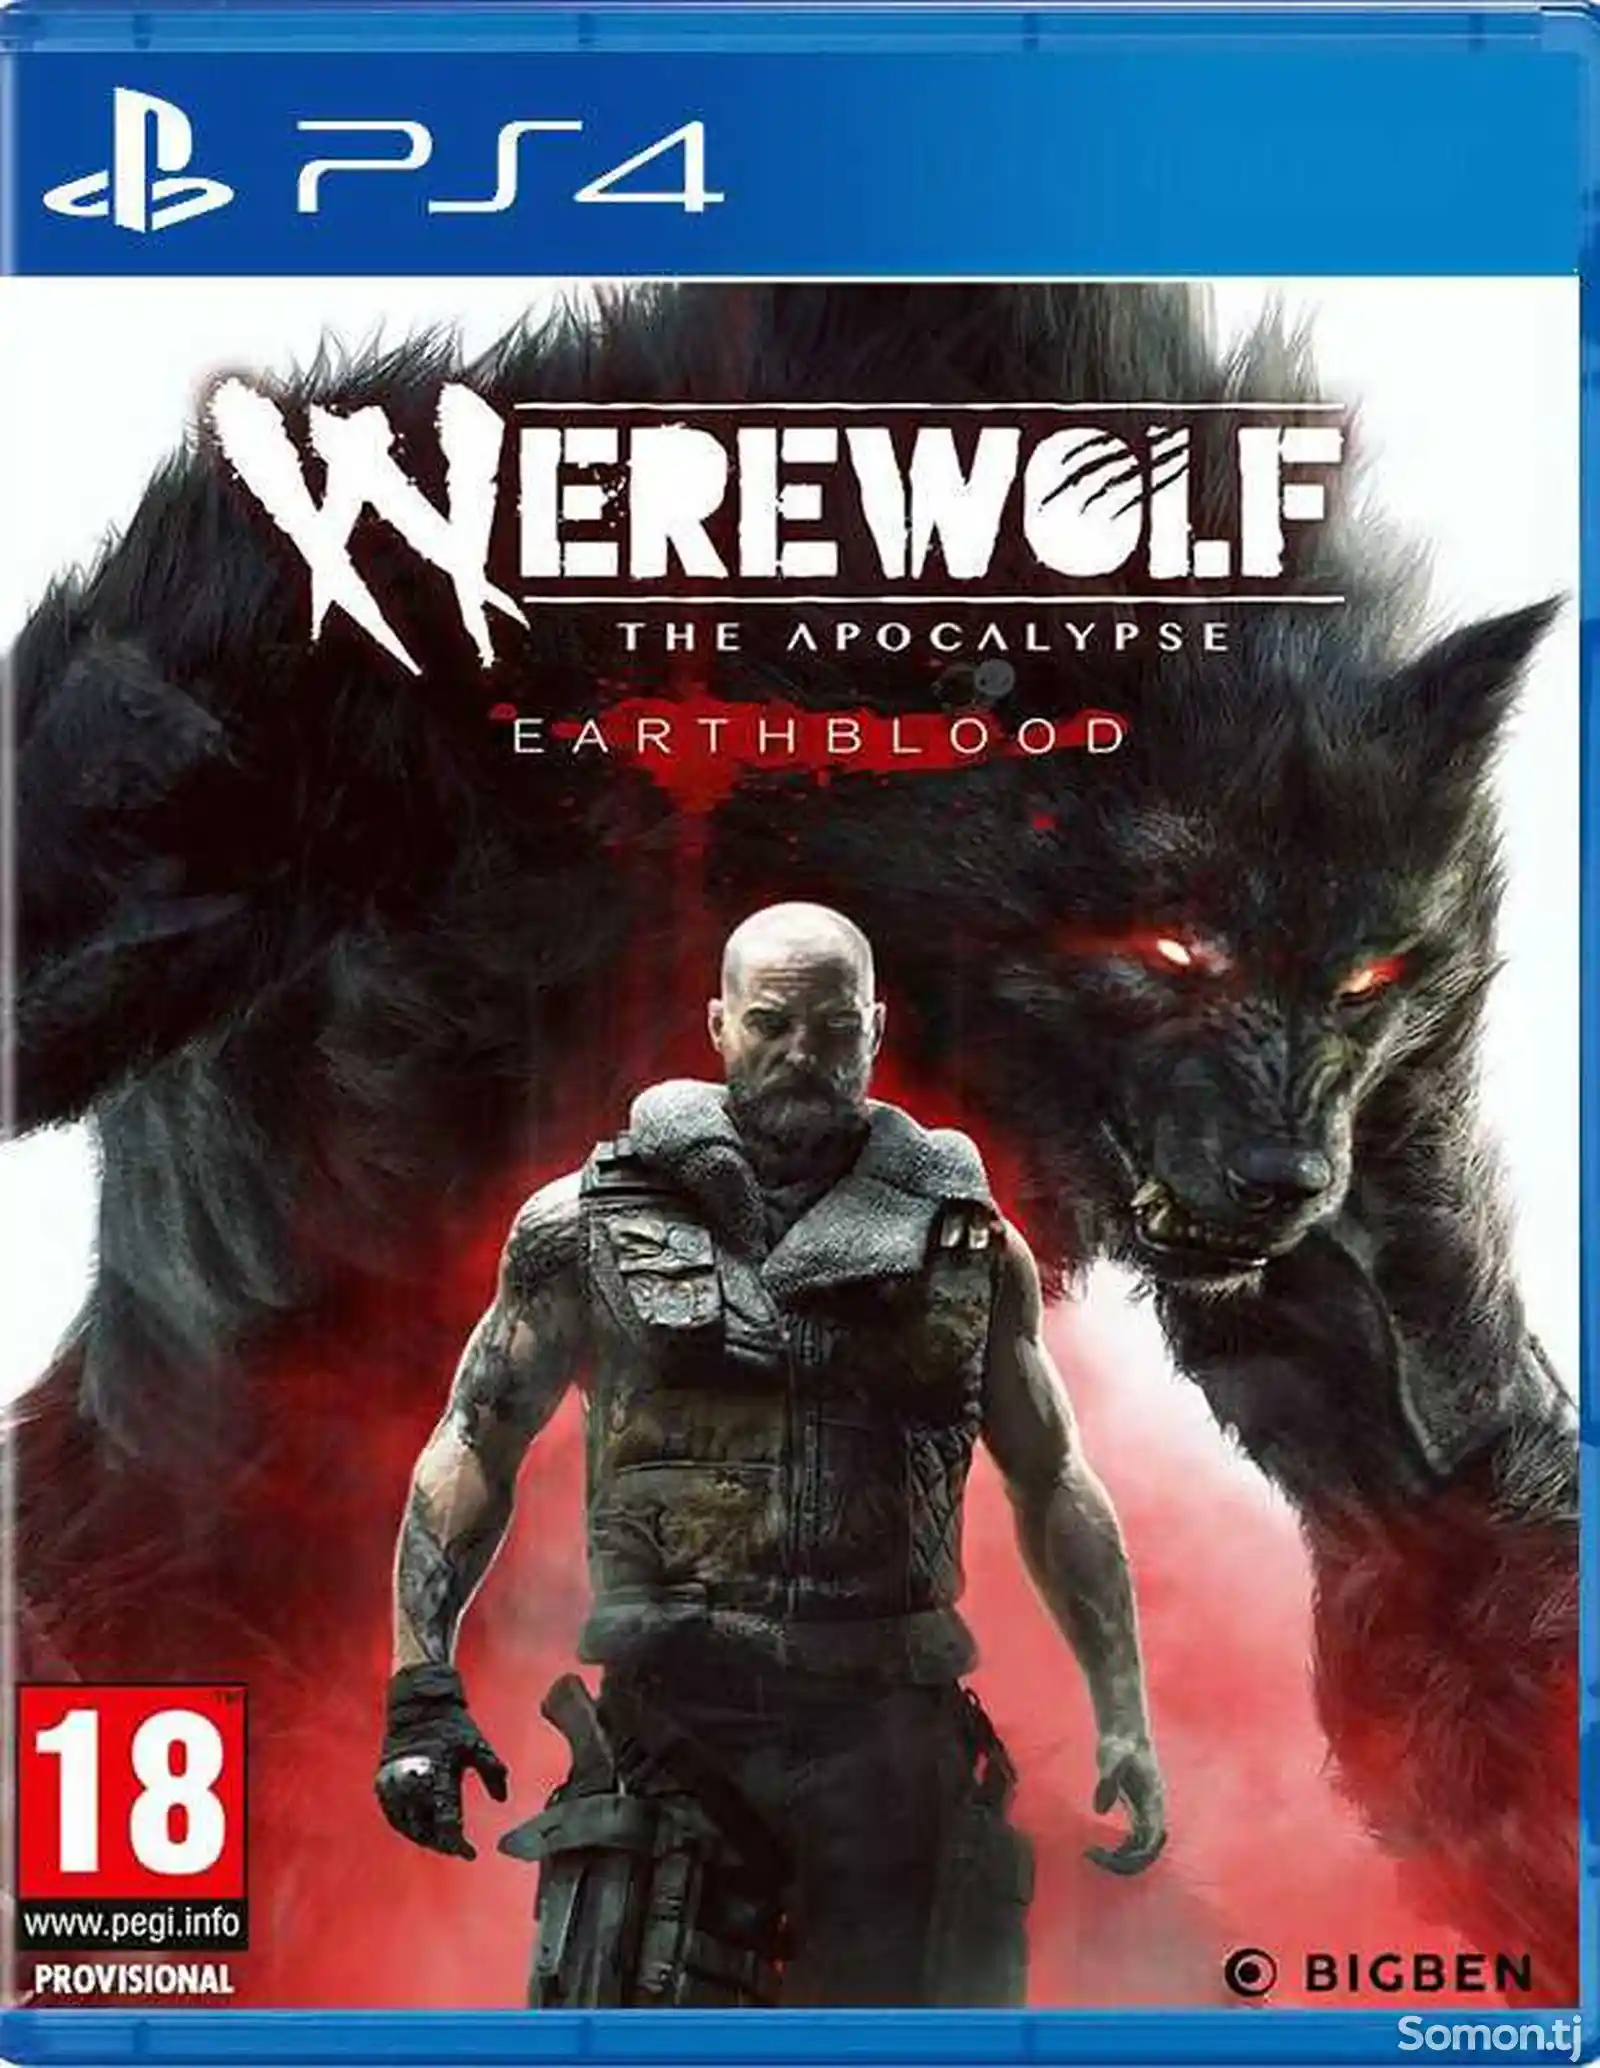 Игра Werewolf the apocalypse для PS-4 / 5.05 / 6.72 / 7.02 / 7.55 / 9.00 /-1